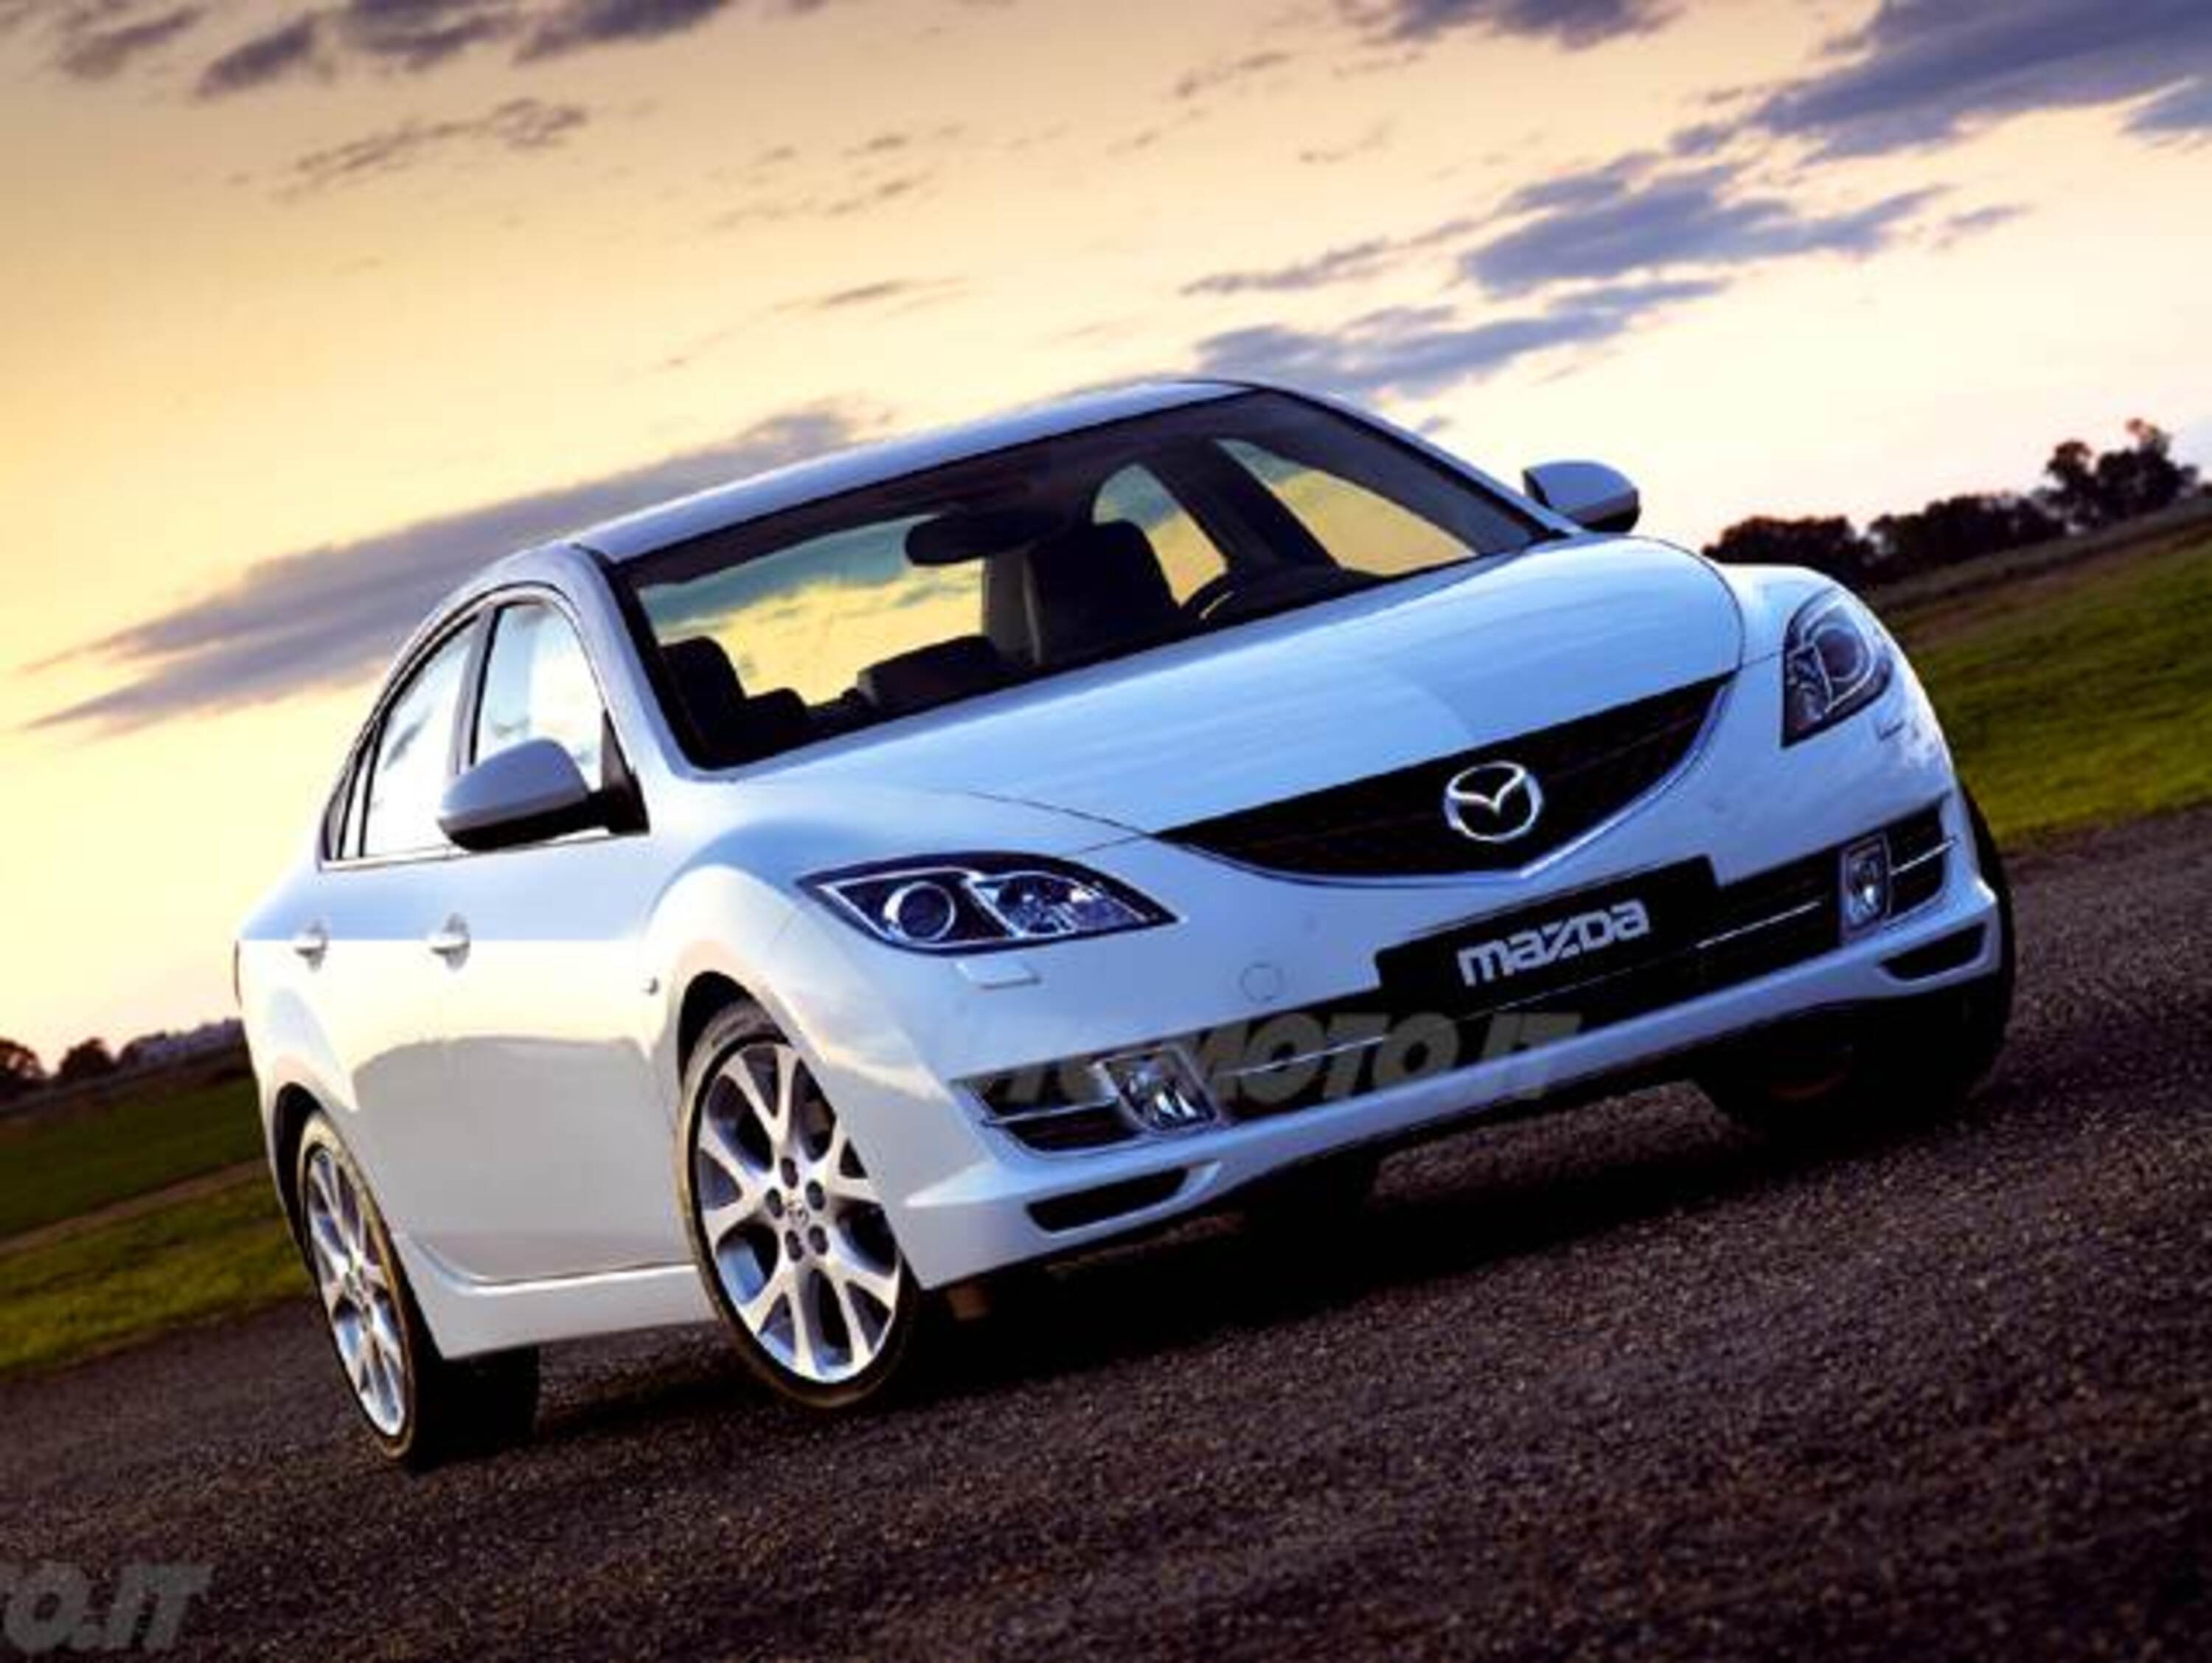 Mazda Mazda6 Sedan 2.0 CD 16V 140CV 4p. Experience